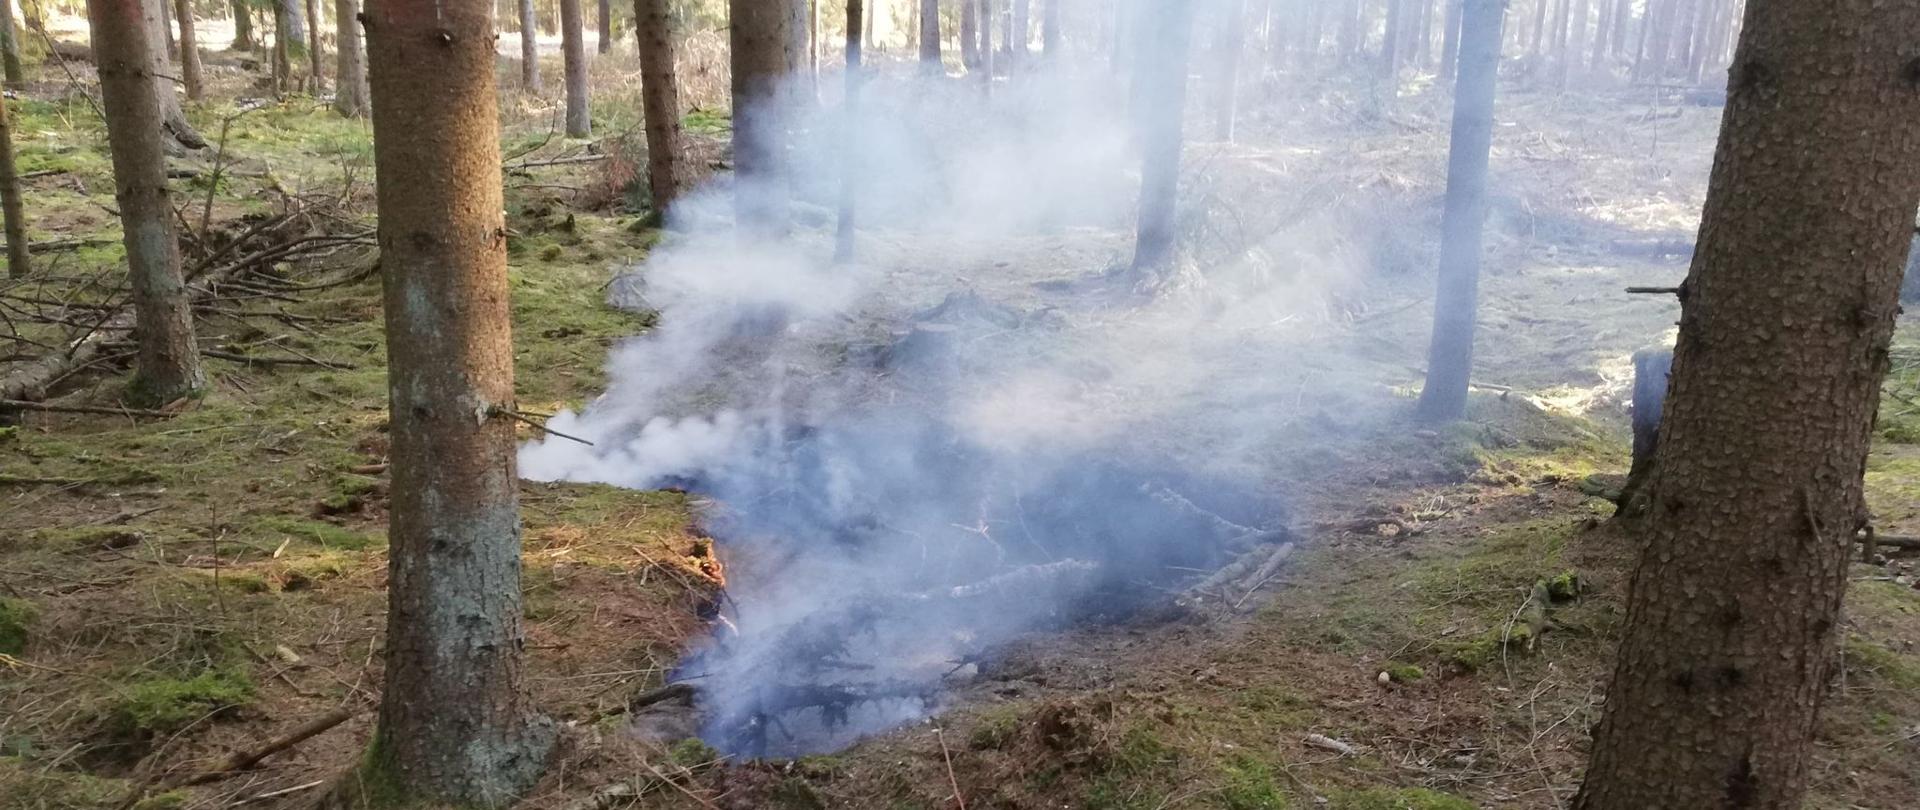 Na zdjęciu widać pożar torfowiska znajdującego się w lesie